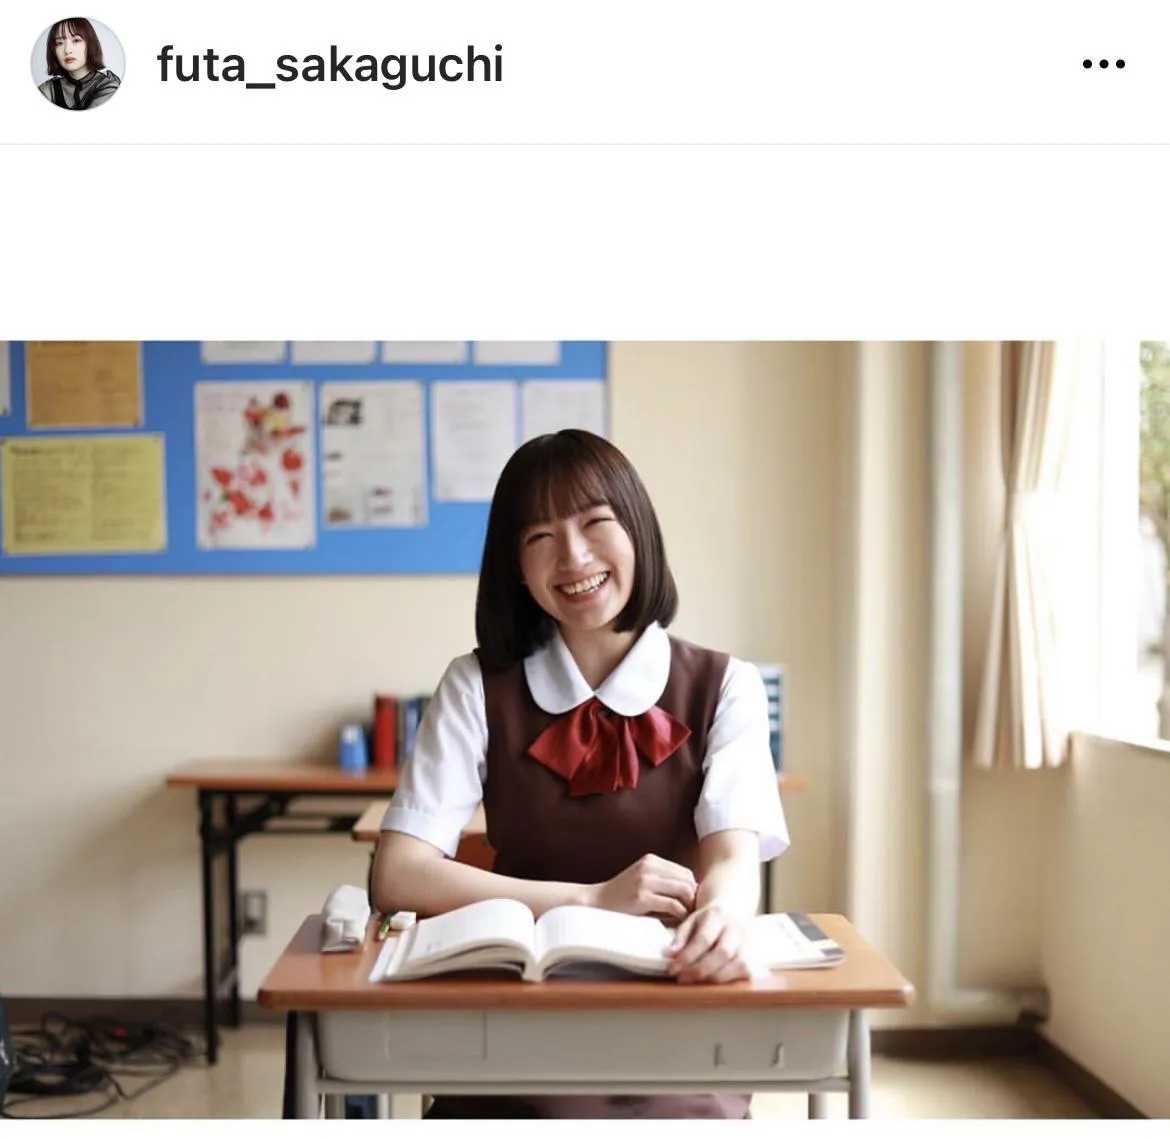 ※坂口風詩Instagram(futa_sakaguchi)より